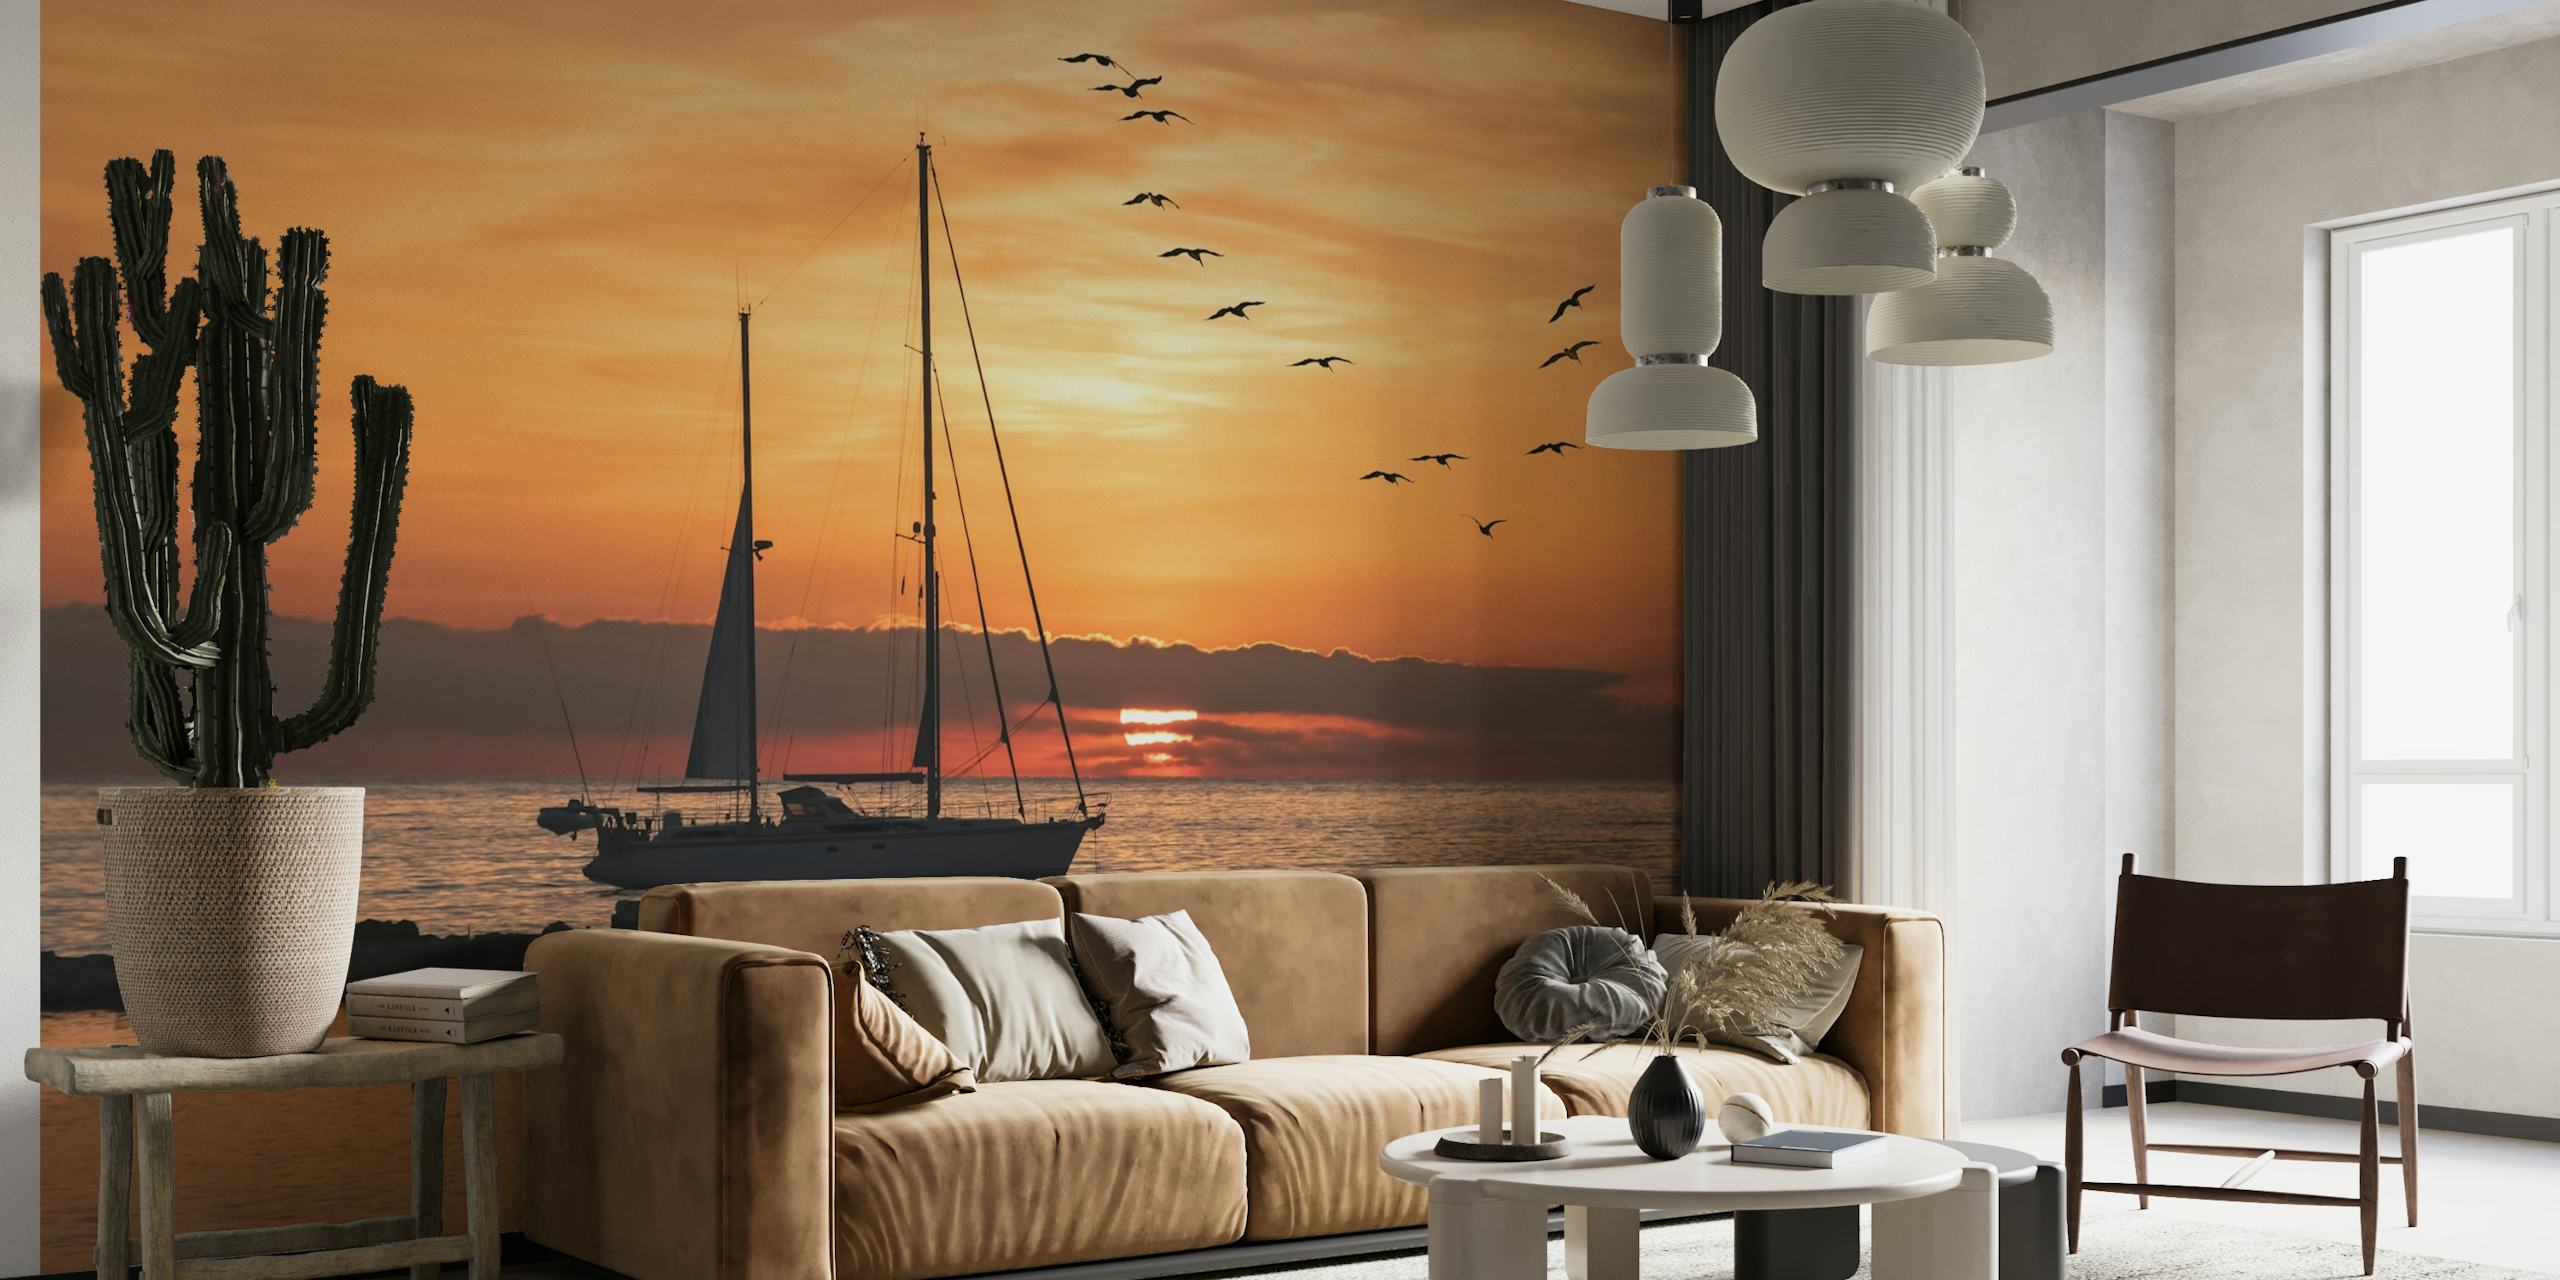 Segelbåt siluett mot en solnedgång bakgrund med flygande fåglar över havet tapeten